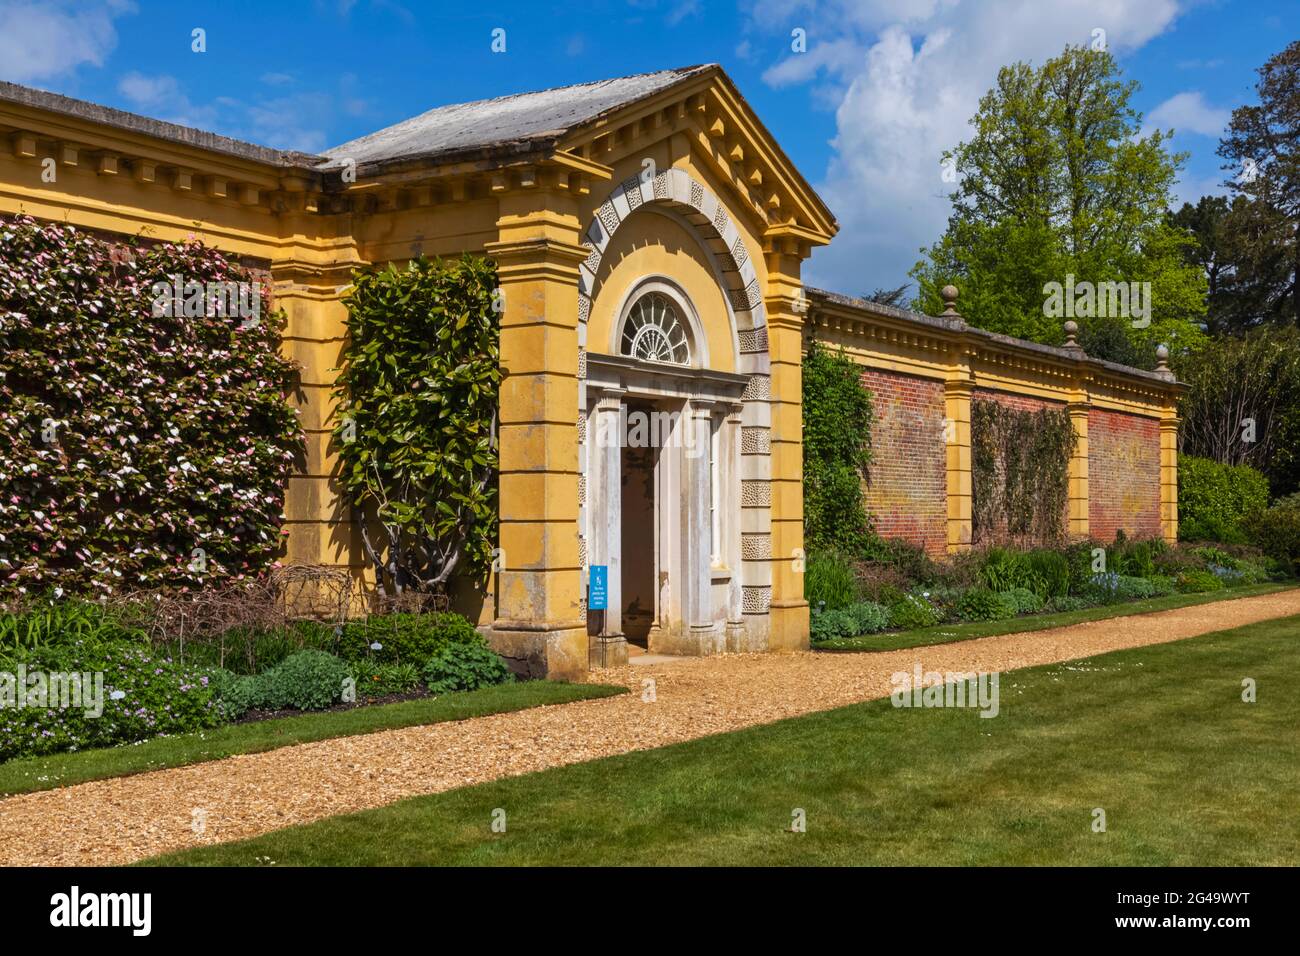 Angleterre, Île de Wight, East Cowes, Osborne House, l'ancienne maison de la Reine Victoria et du Prince Albert, entrée au jardin clos Banque D'Images